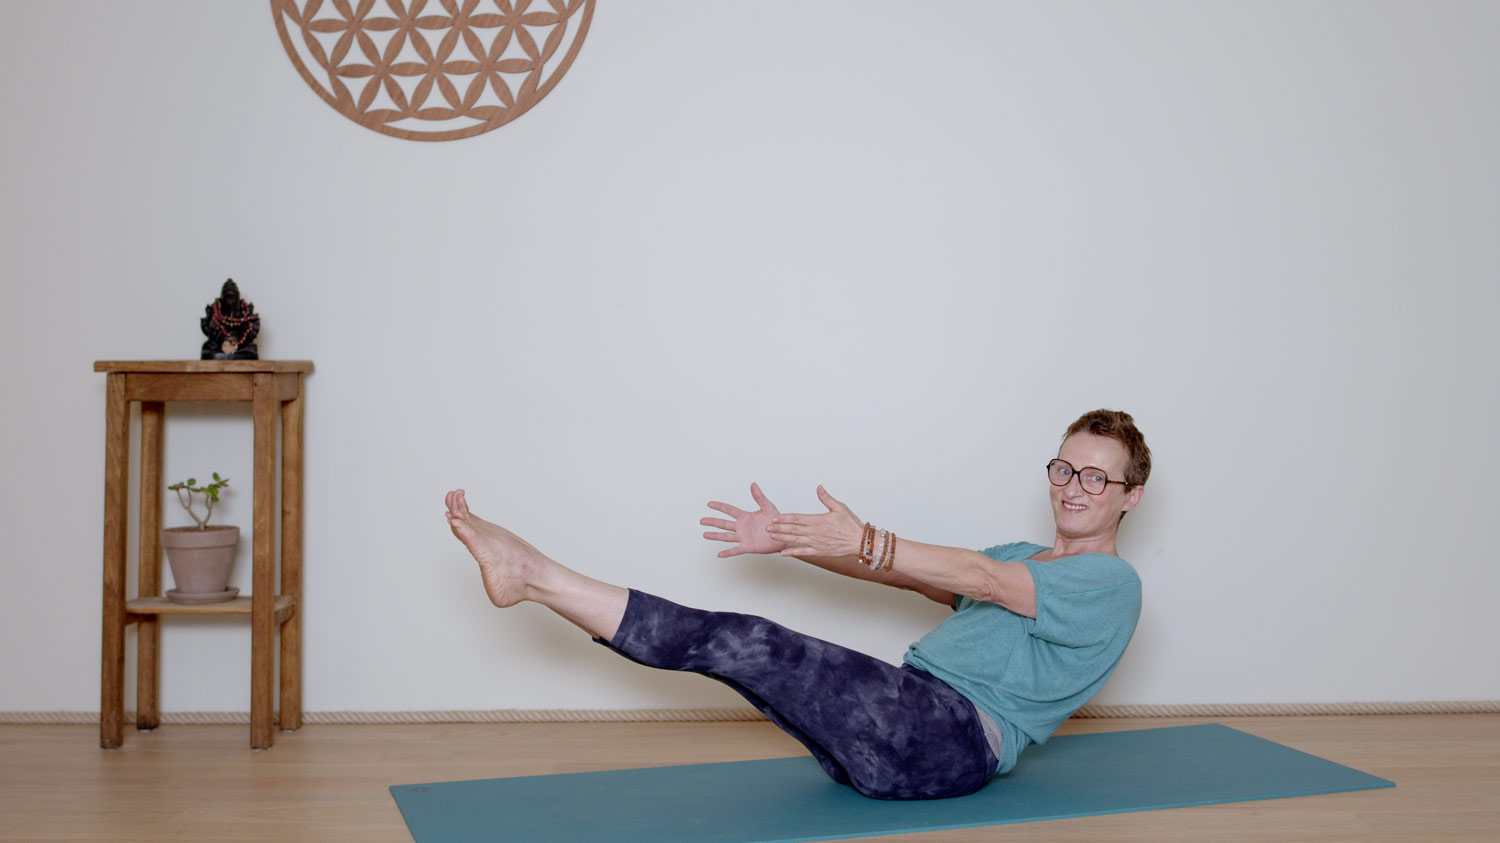 Séance complète - 45 min - Corps de sagesse | Cours de yoga en ligne avec Delphine Denis | Hatha Yoga dynamique, Méditation, Pranayama